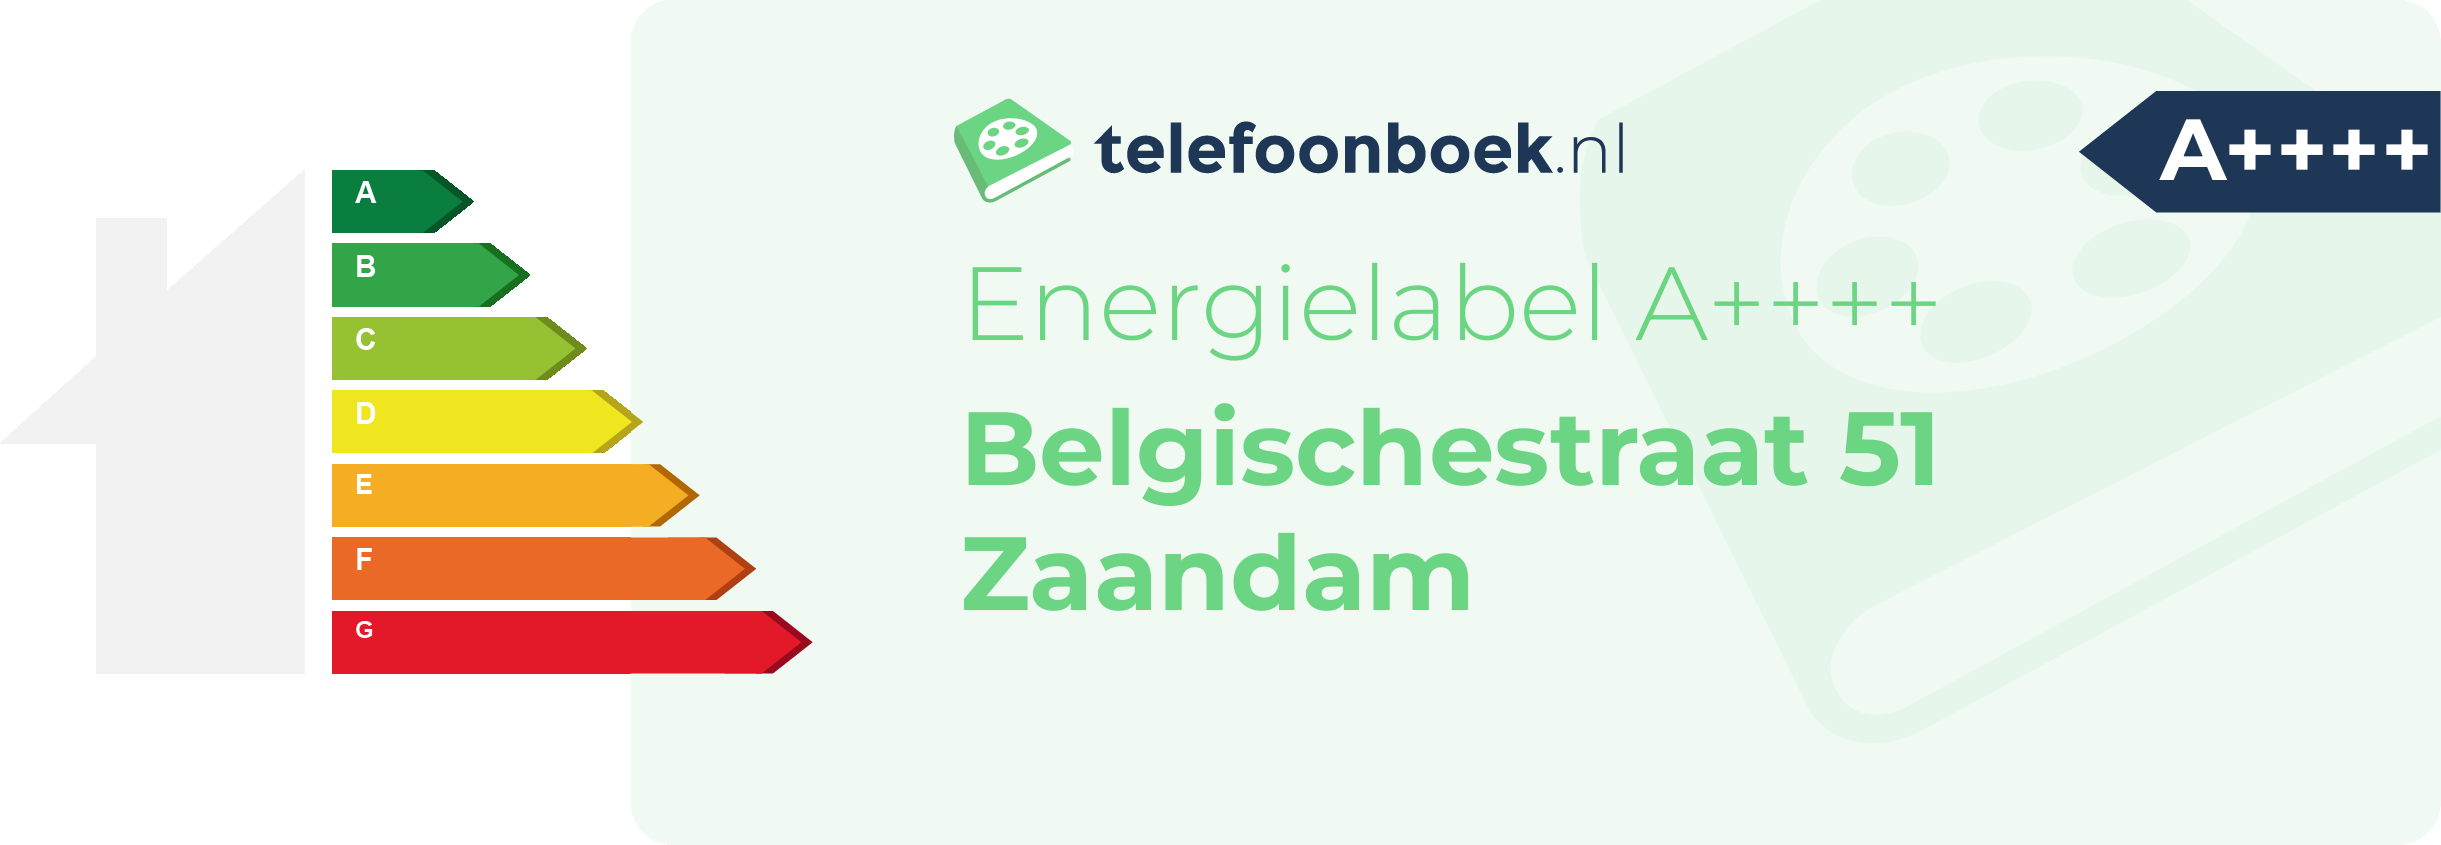 Energielabel Belgischestraat 51 Zaandam